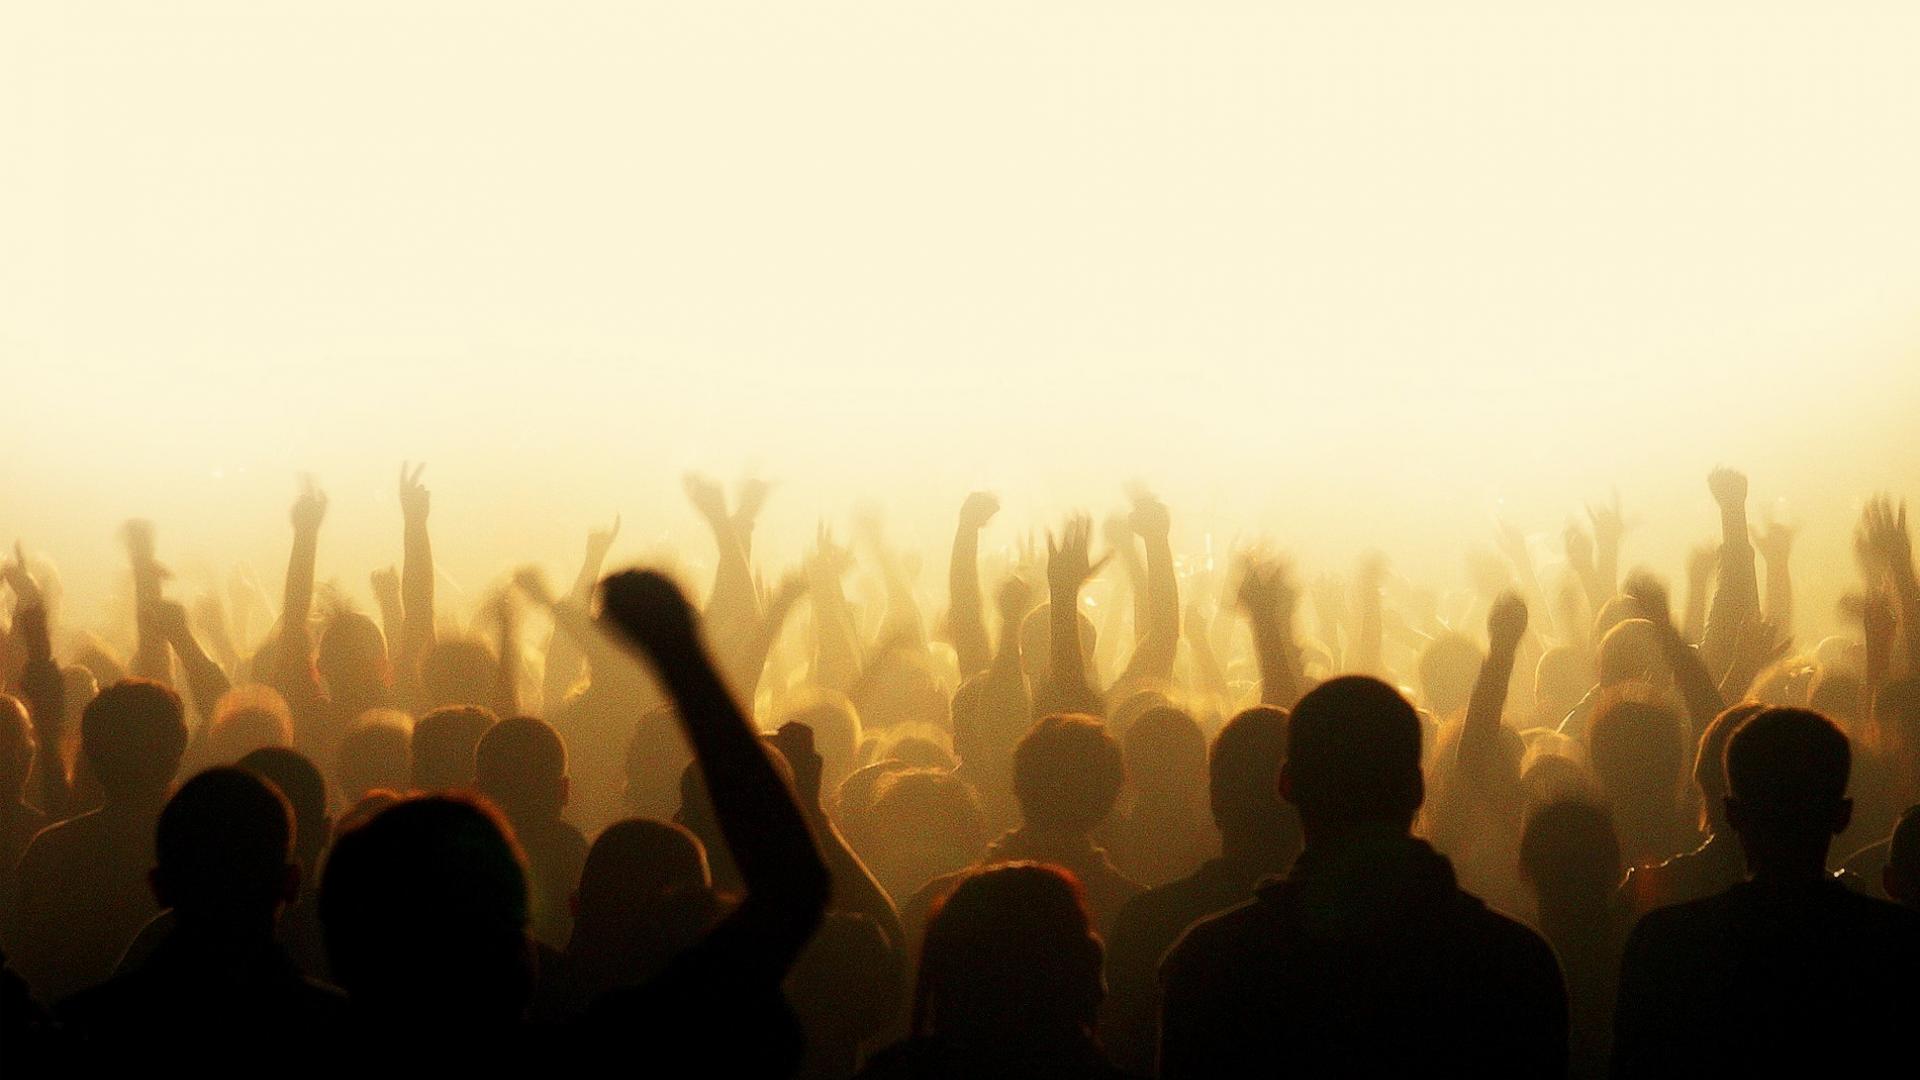 Light hands people party crowd dancing concert wallpaper 50299 1920x1080